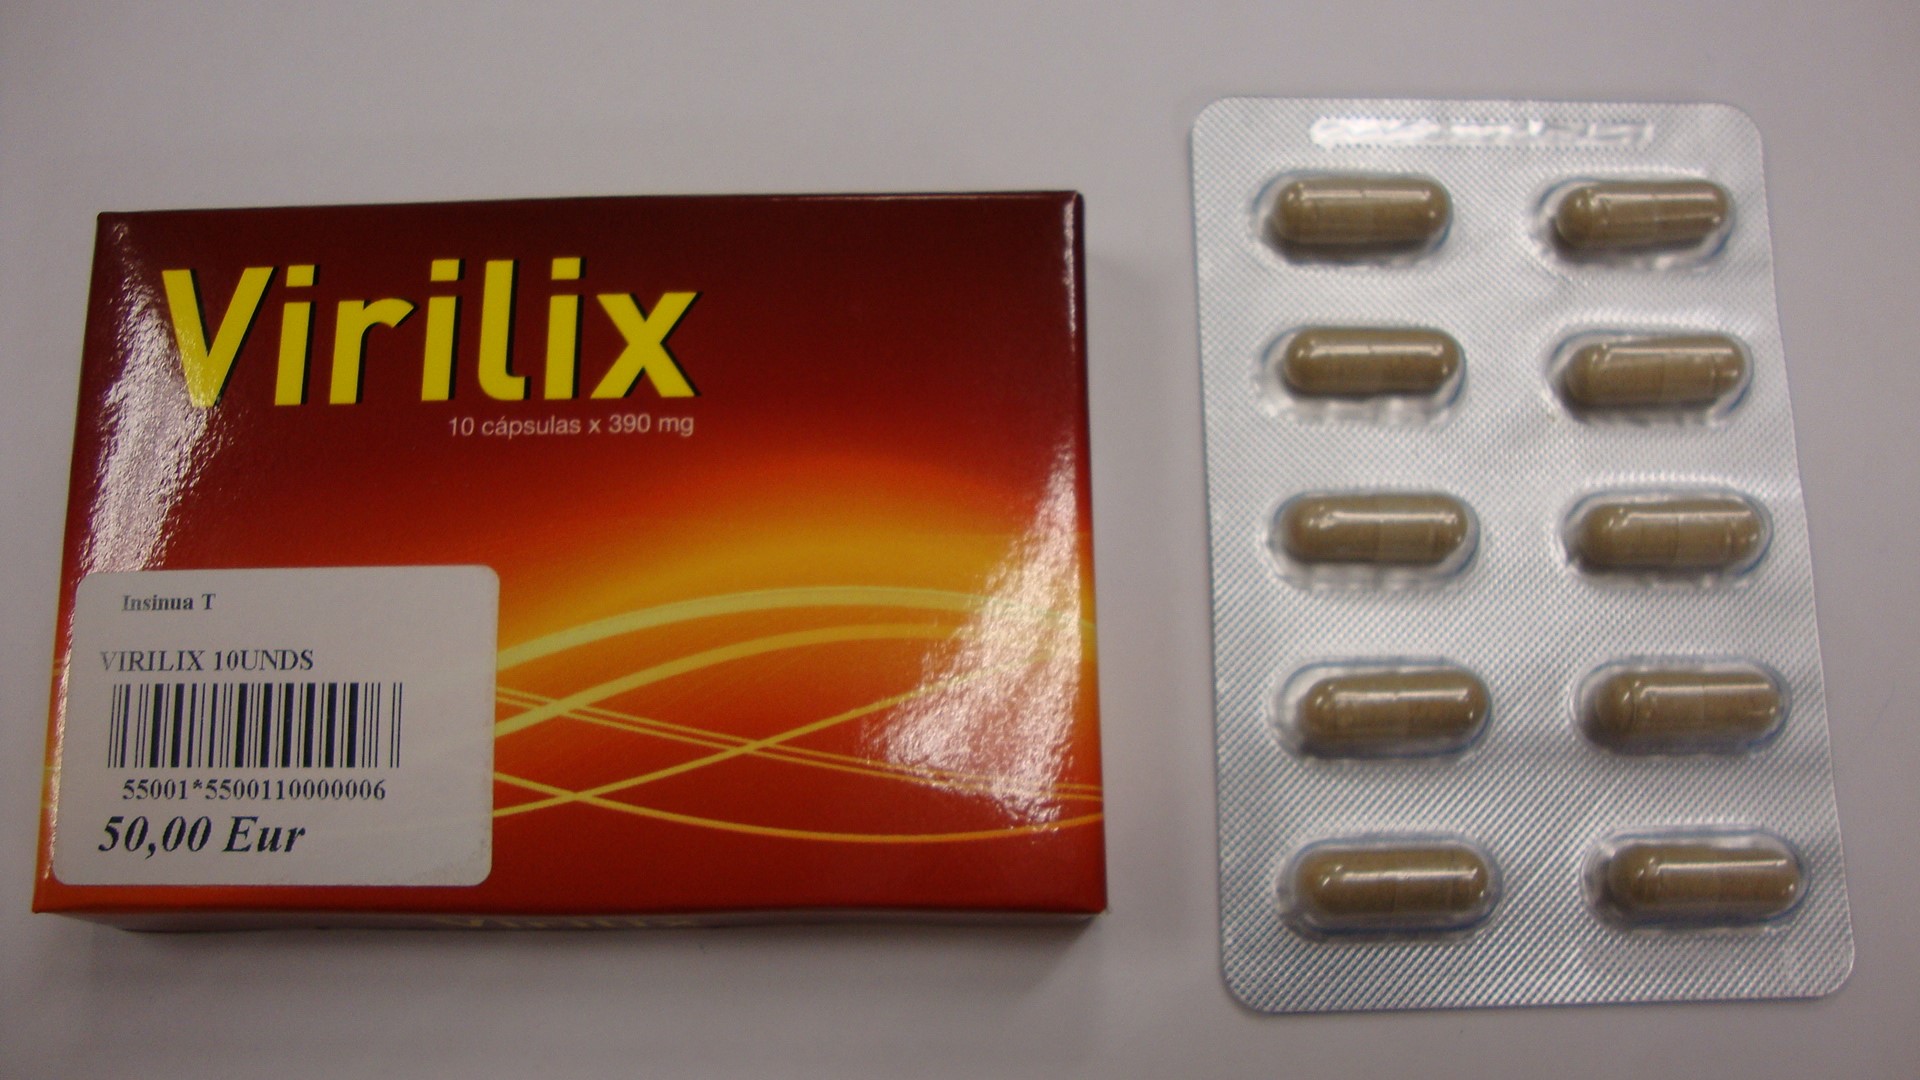 Billede af det ulovlige produkt: Virilix